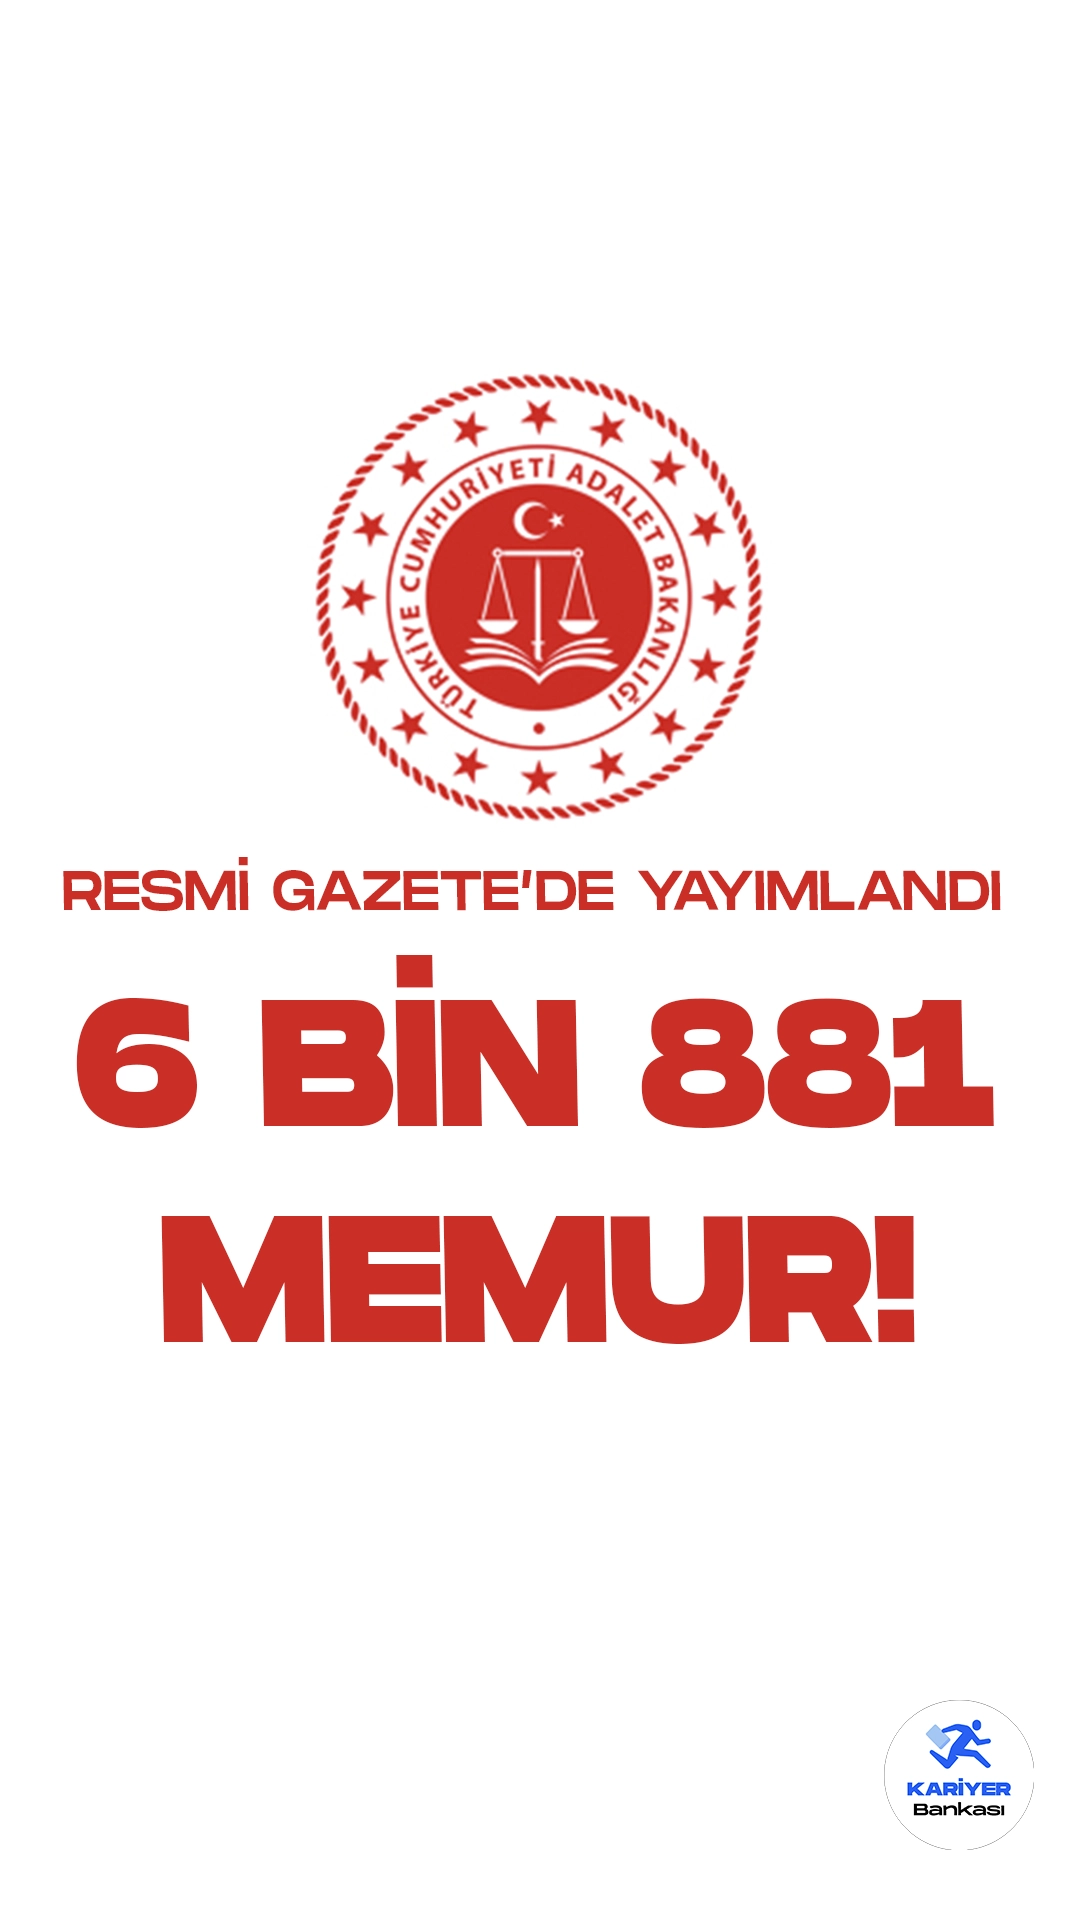 Adalet Bakanlığına 6 Bin 881 Memur Kadrosu İhdas Edildi.Cumhurbaşkanı Recep Tayyip Erdoğan’ın onayıyla Adalet Bakanlığına 6 bin 881 memur ihdası gerçekleştirildi.Bakanlık ve Bazı Kamu Kurum ve Kuruluşlarına kadro ihdas edilmesine ilişkin Cumhurbaşkanı Kararnamesi Resmi Gazete’nin 19 Ekim 2023 tarihli sayısında yayımlanarak yürürlüğe girdi.İlgili kararda Adalet Bakanlığı merkez ve taşra teşkilatı için 6 bin 881 kadro ihdası yapıldığı yapıldığı görülürken, alım yapılması planan kadro dağılımıda belli oldu.